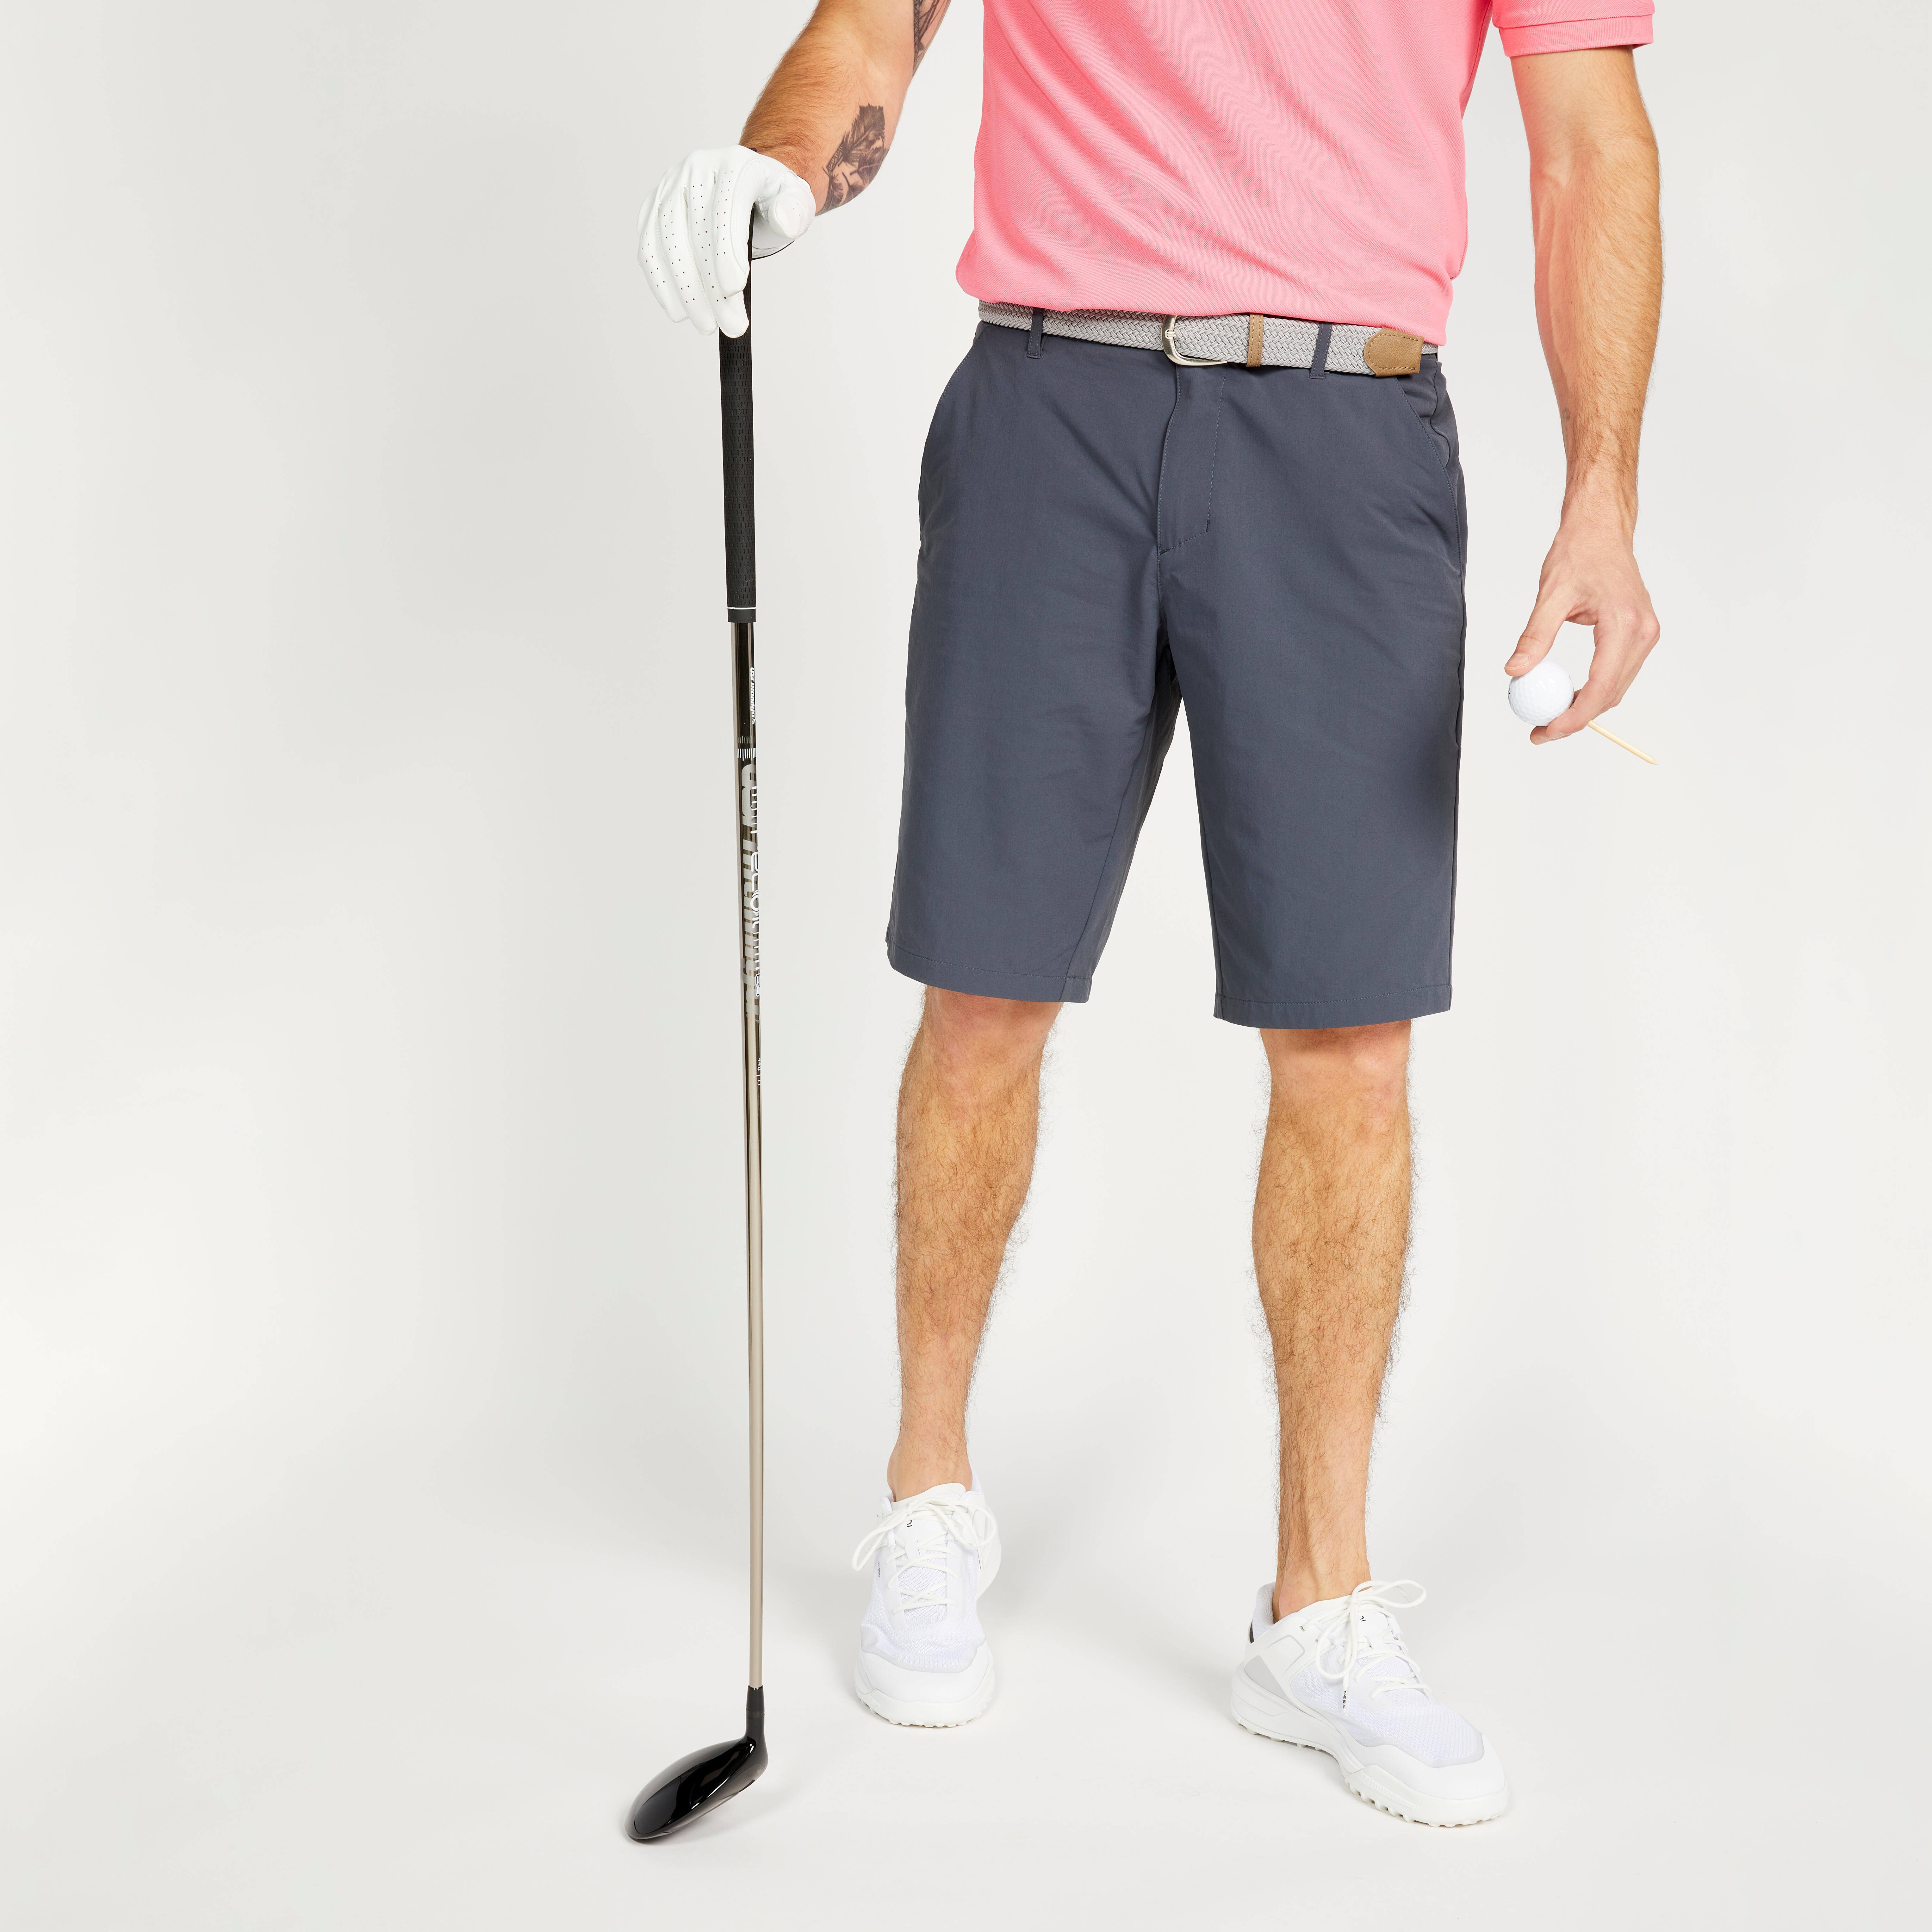 Decathlon | Pantaloncini golf uomo WW 500 grigio scuro |  Inesis